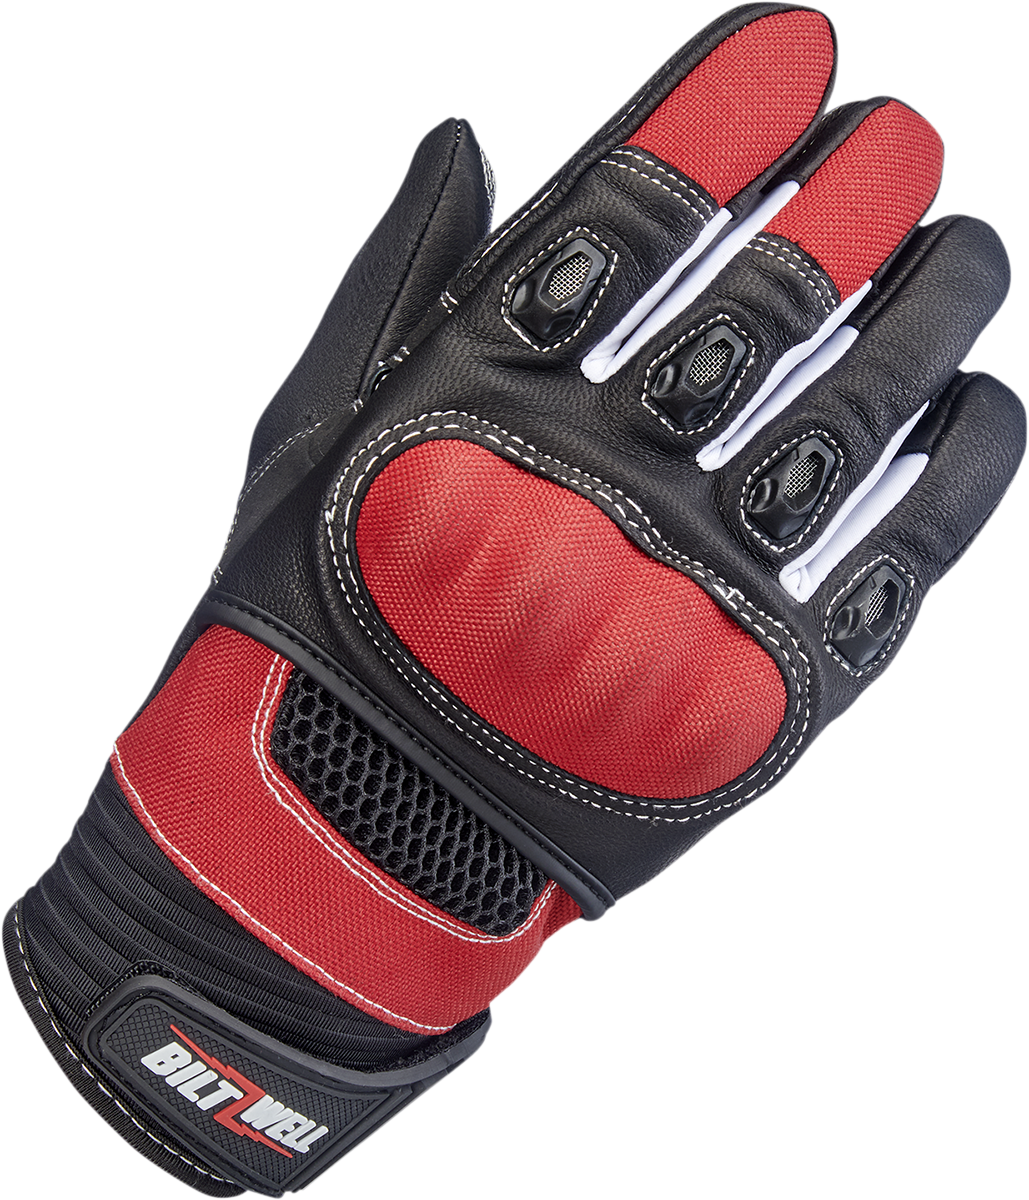 BILTWELL Bridgeport Gloves - Red - XL 1509-0801-305